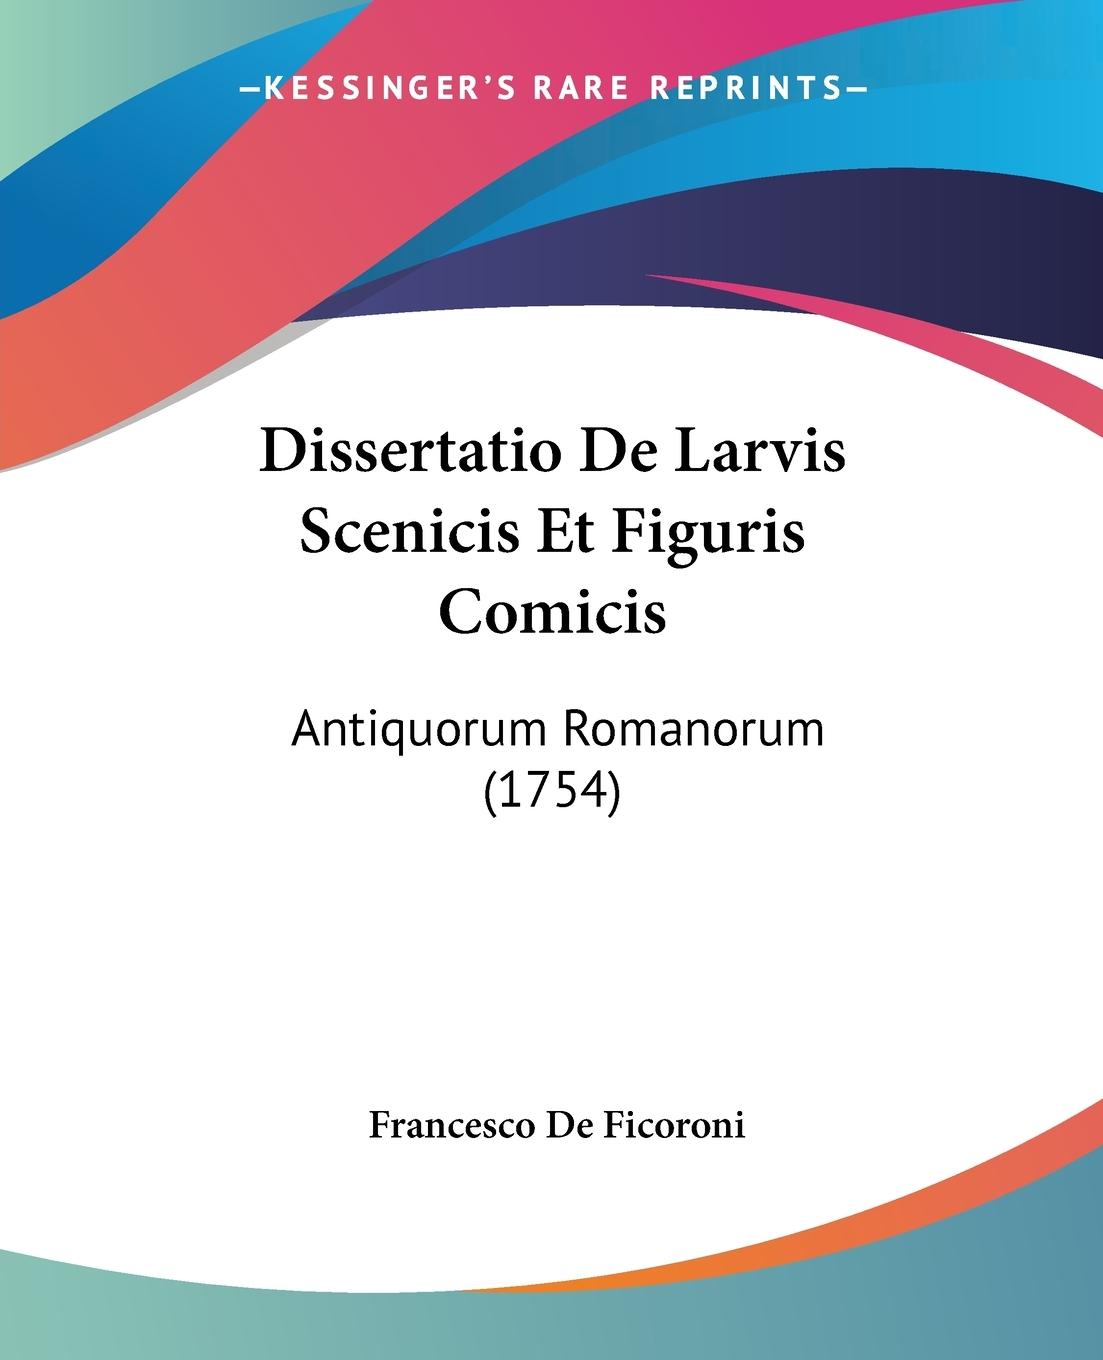 Dissertatio De Larvis Scenicis Et Figuris Comicis - Ficoroni, Francesco De